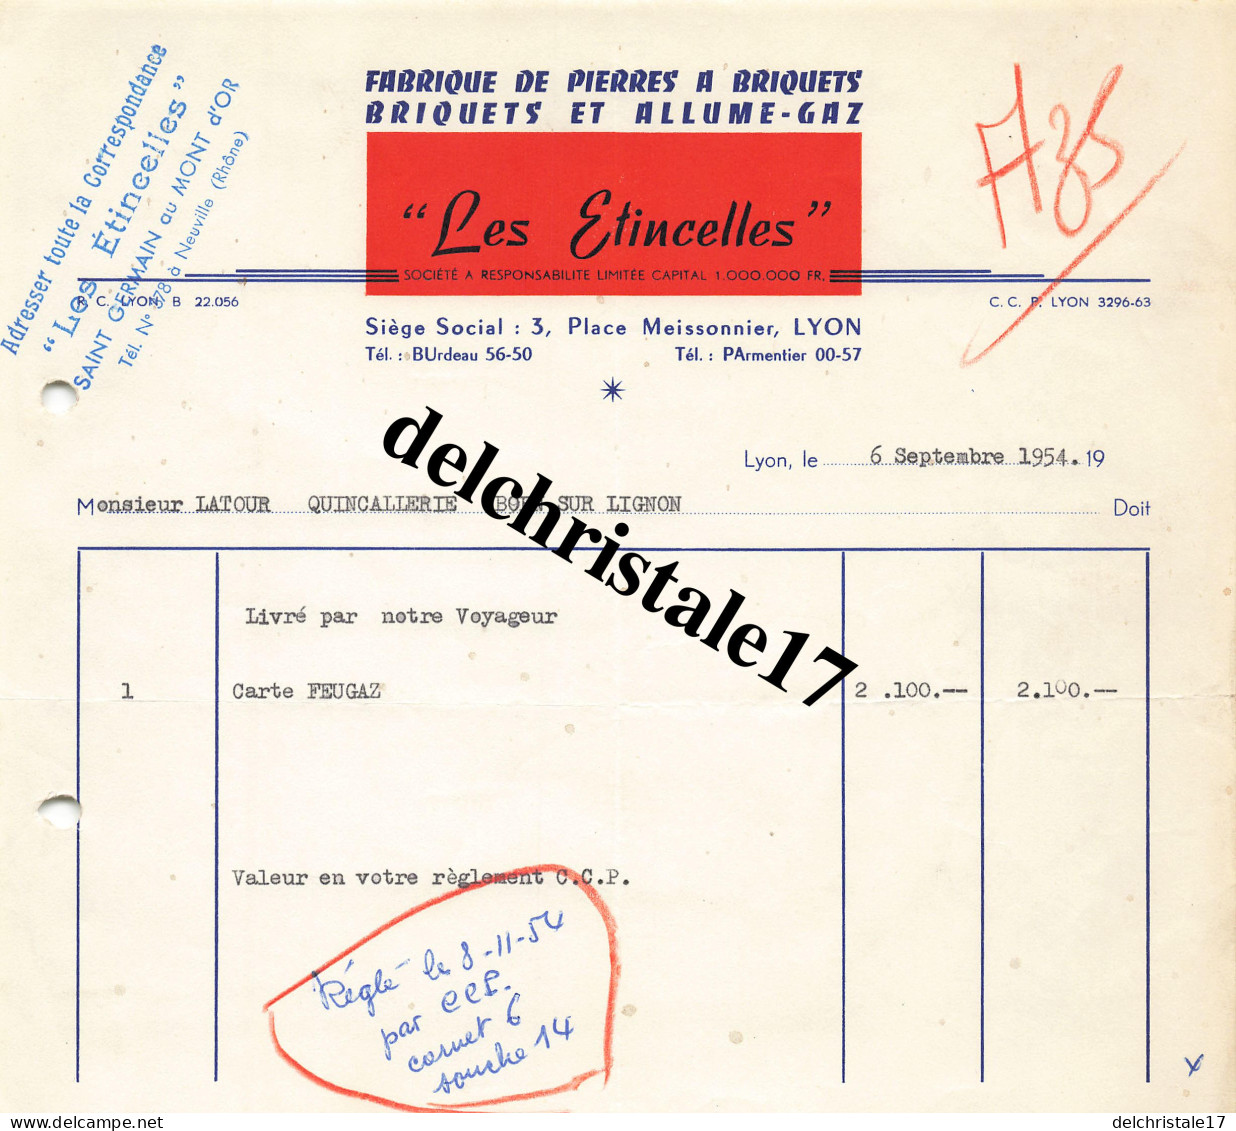 69 0188 LYON RHÔNE 1954 Fabrication De Pierres à Briquets Allume-Gaz "LES ÉTINCELLES" Place Meissonnier à M. LATOUR - Documentos